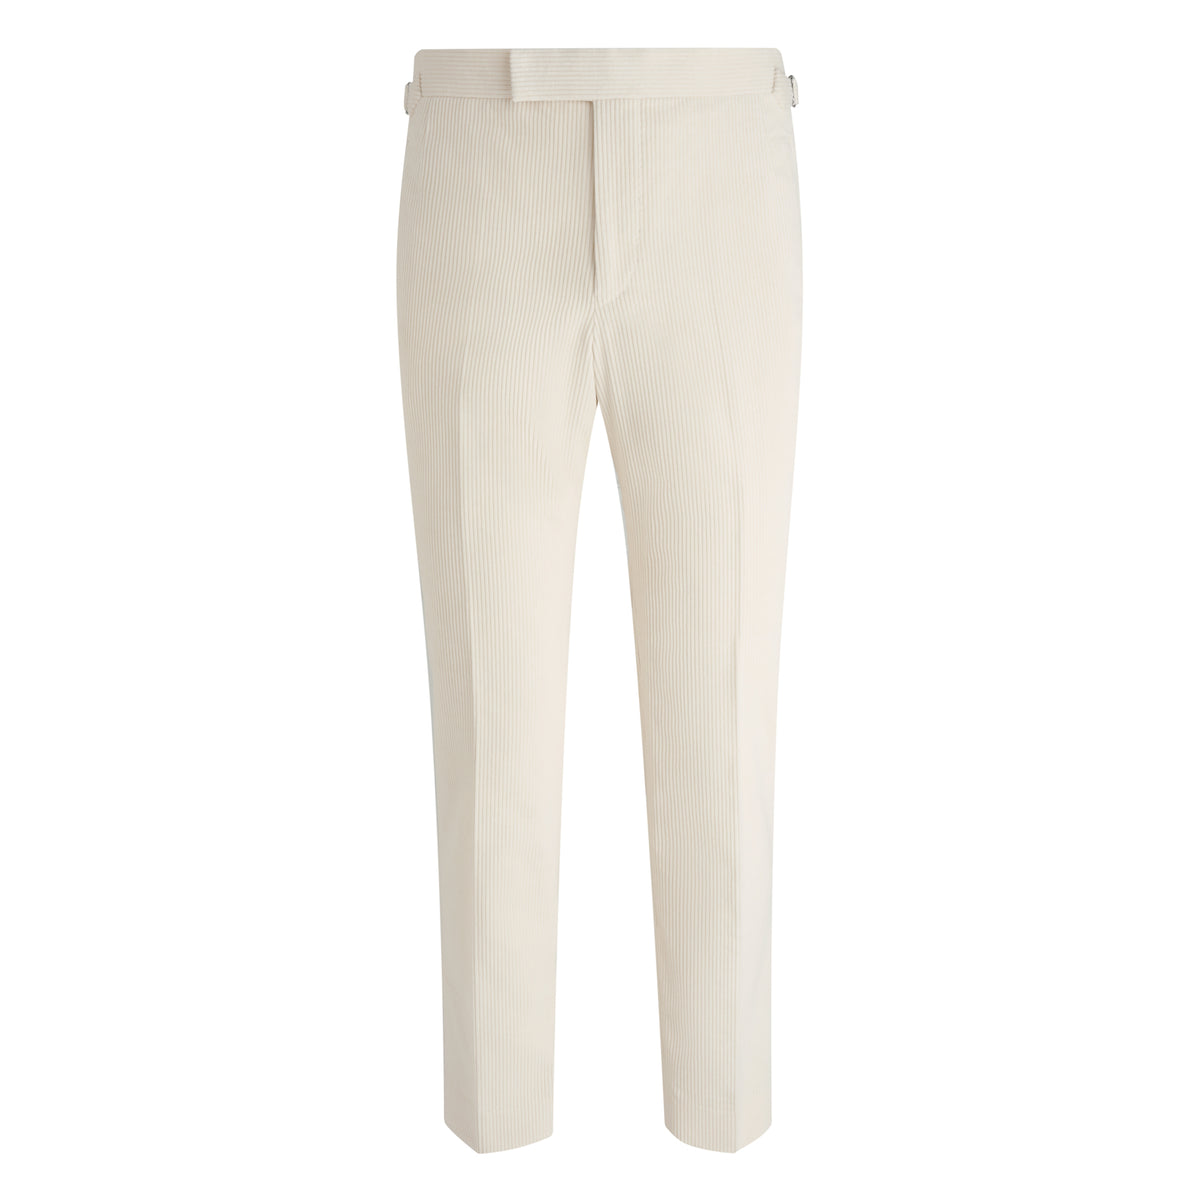 Cream Corduroy Contemporary Trousers – Edward Sexton